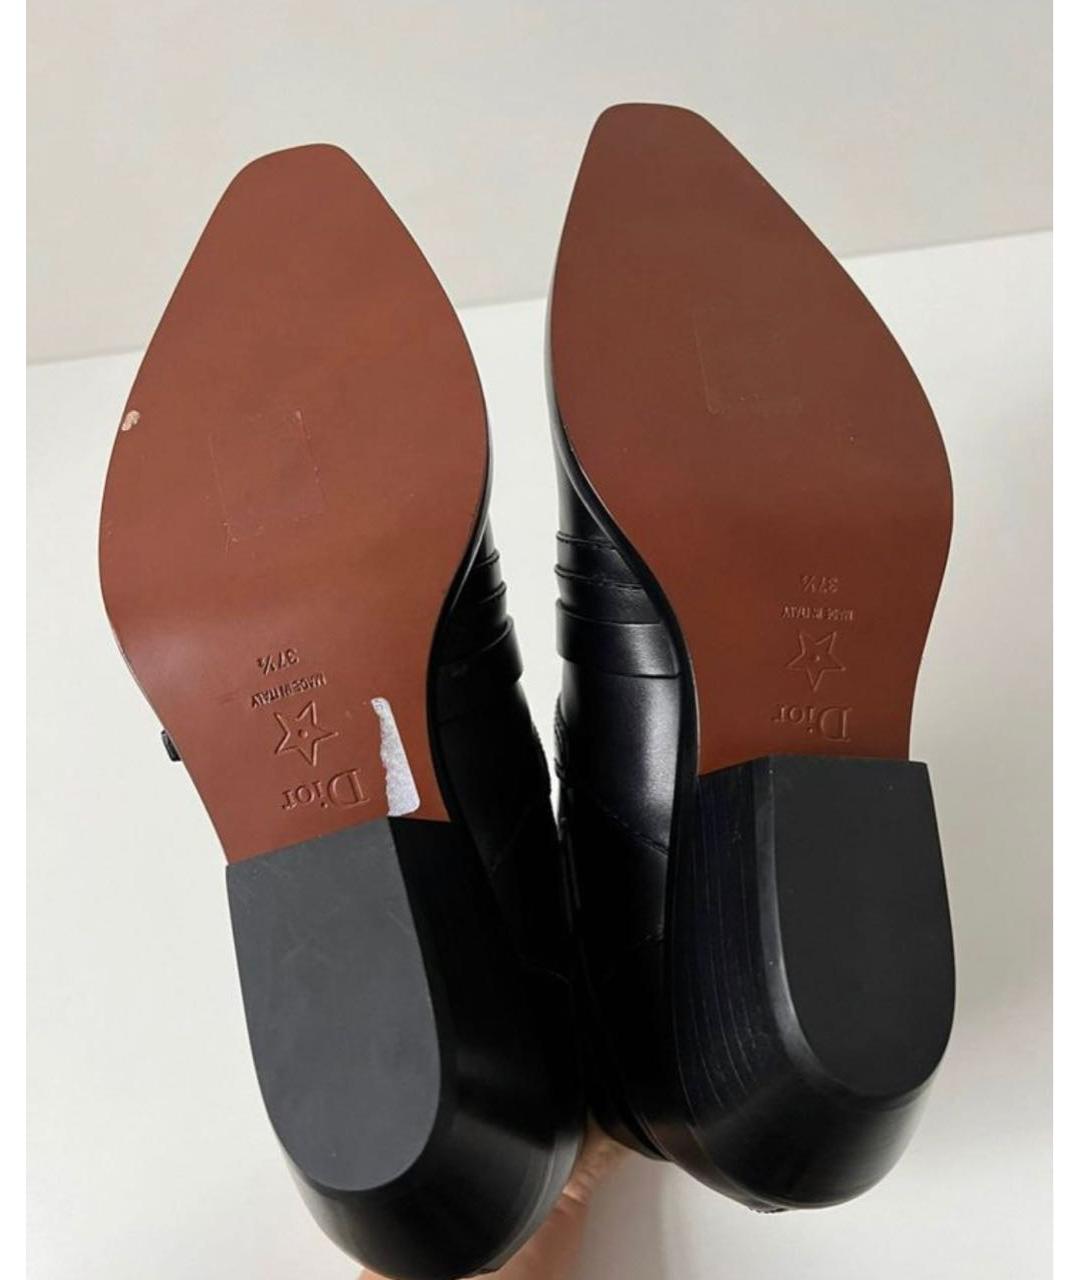 CHRISTIAN DIOR PRE-OWNED Черные кожаные ботинки, фото 3